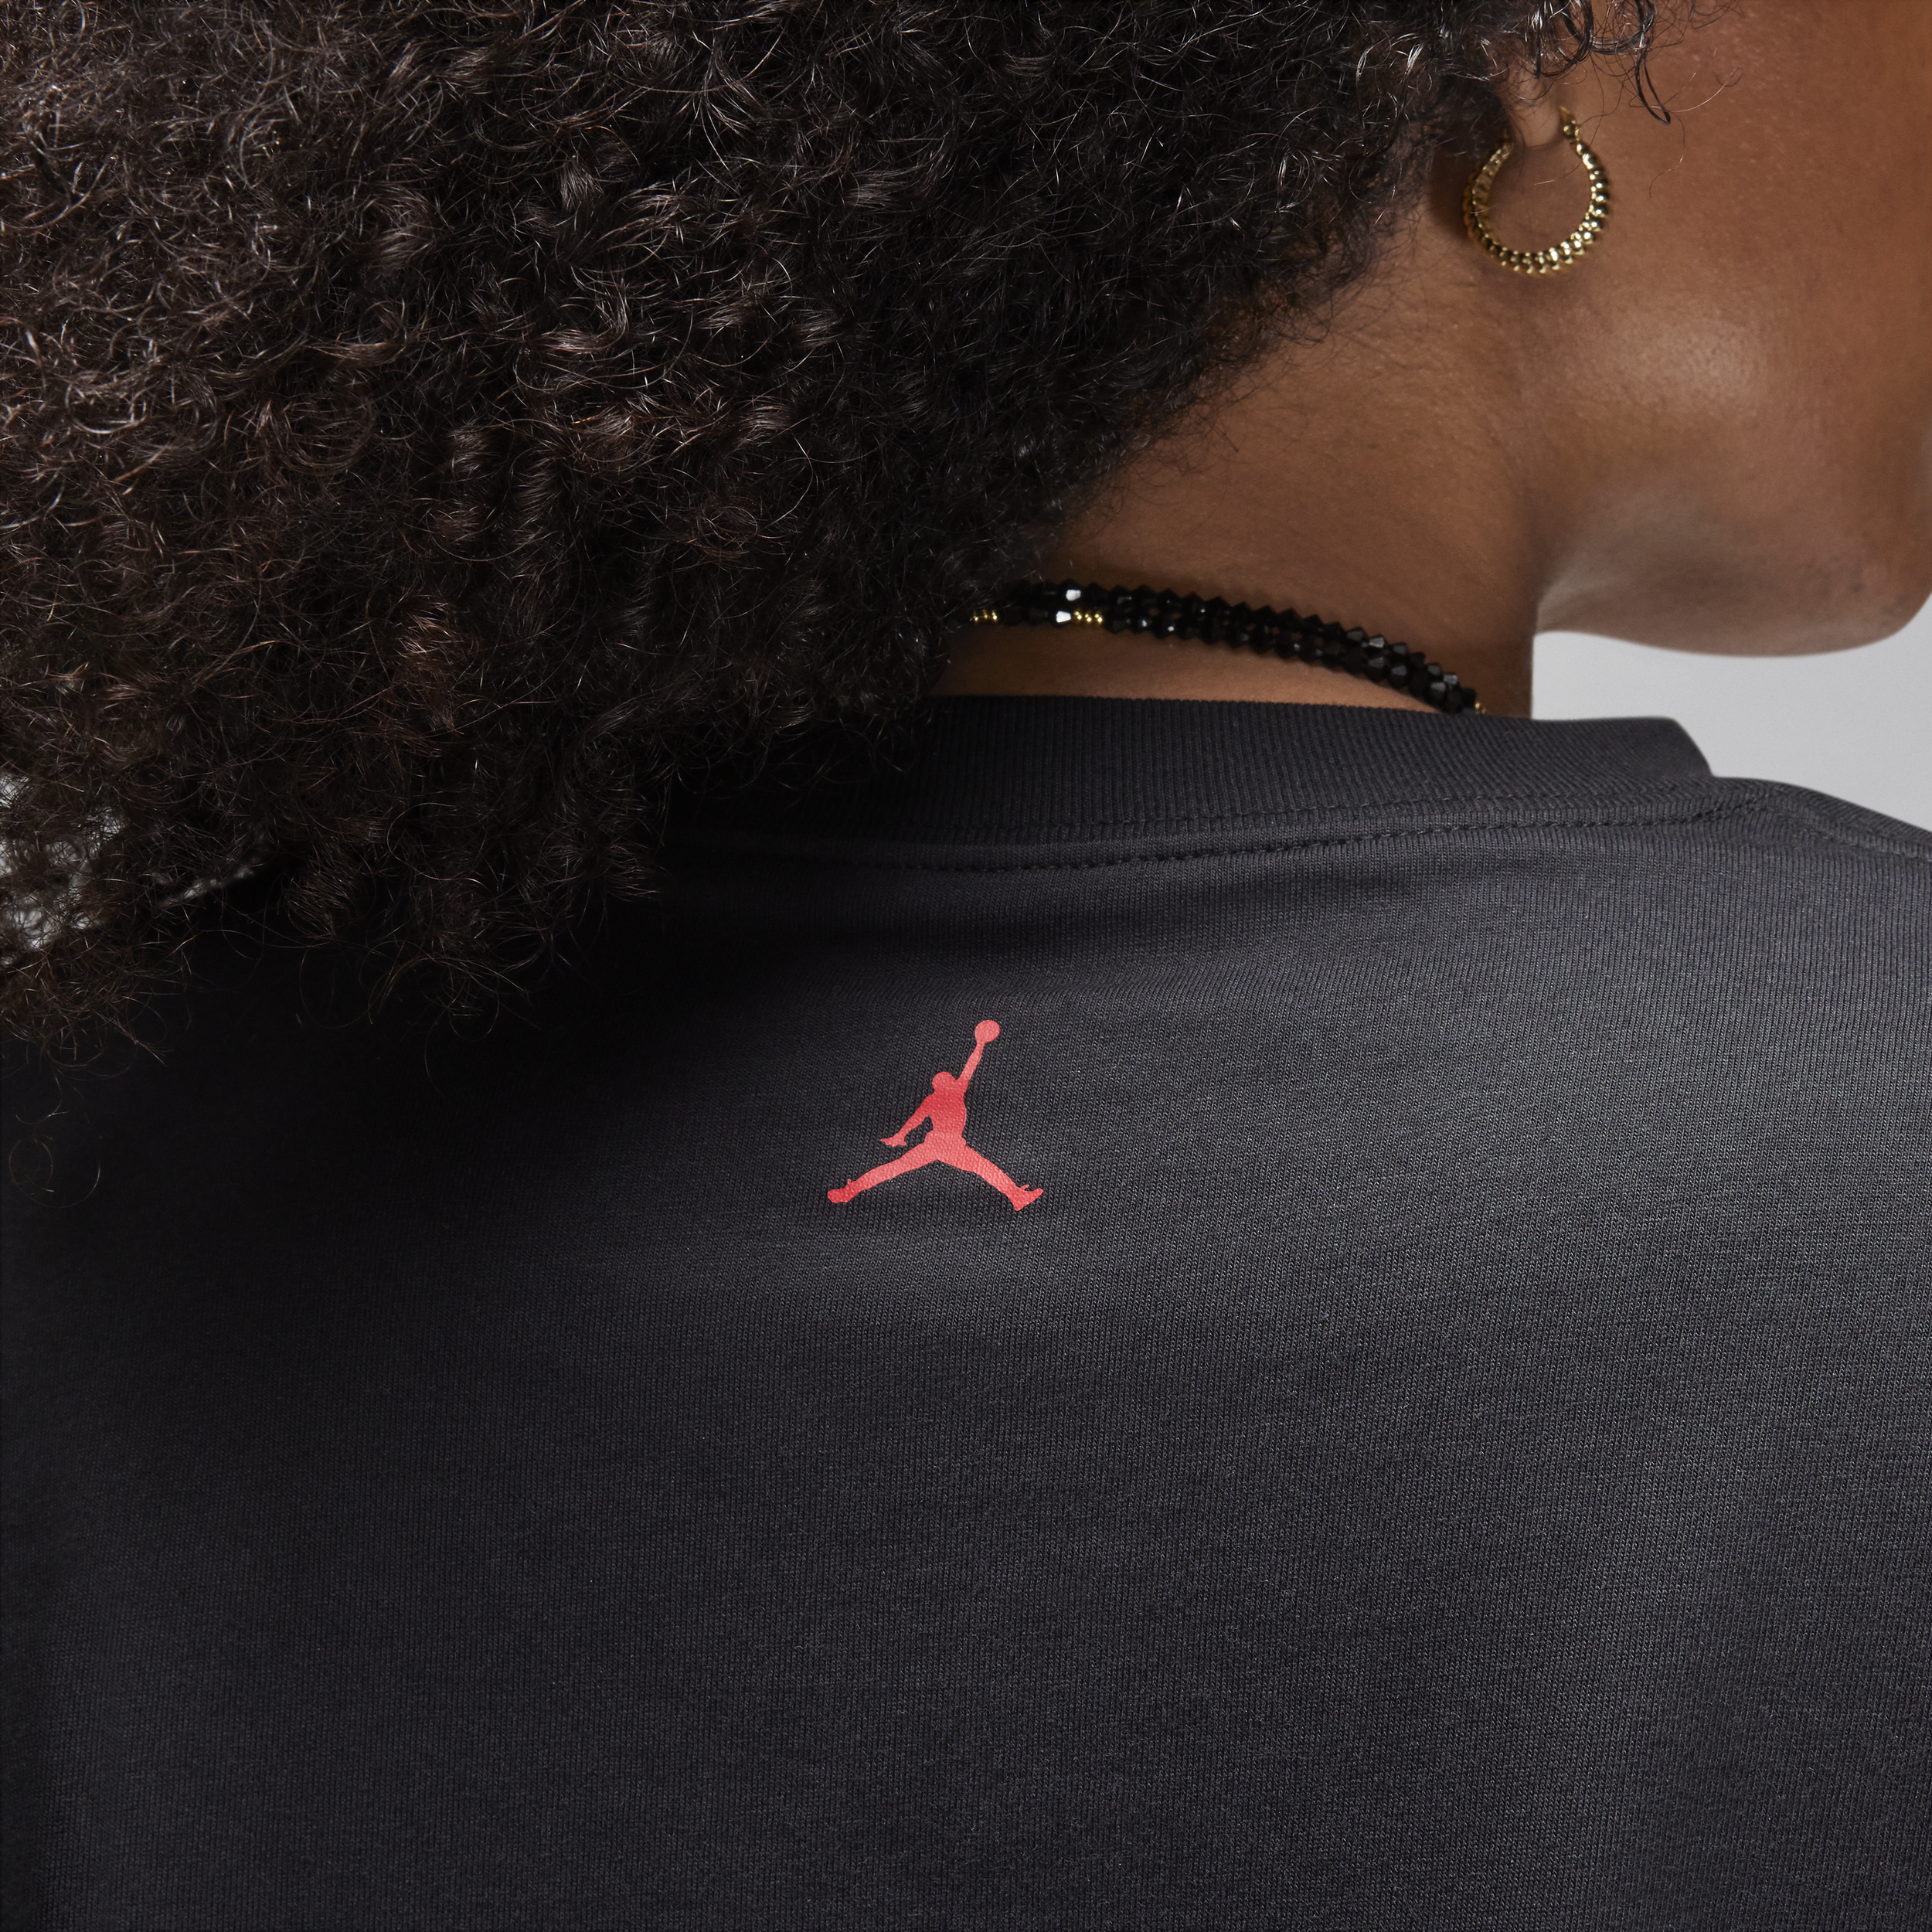 Jordan T-shirt met graphic voor dames Zwart